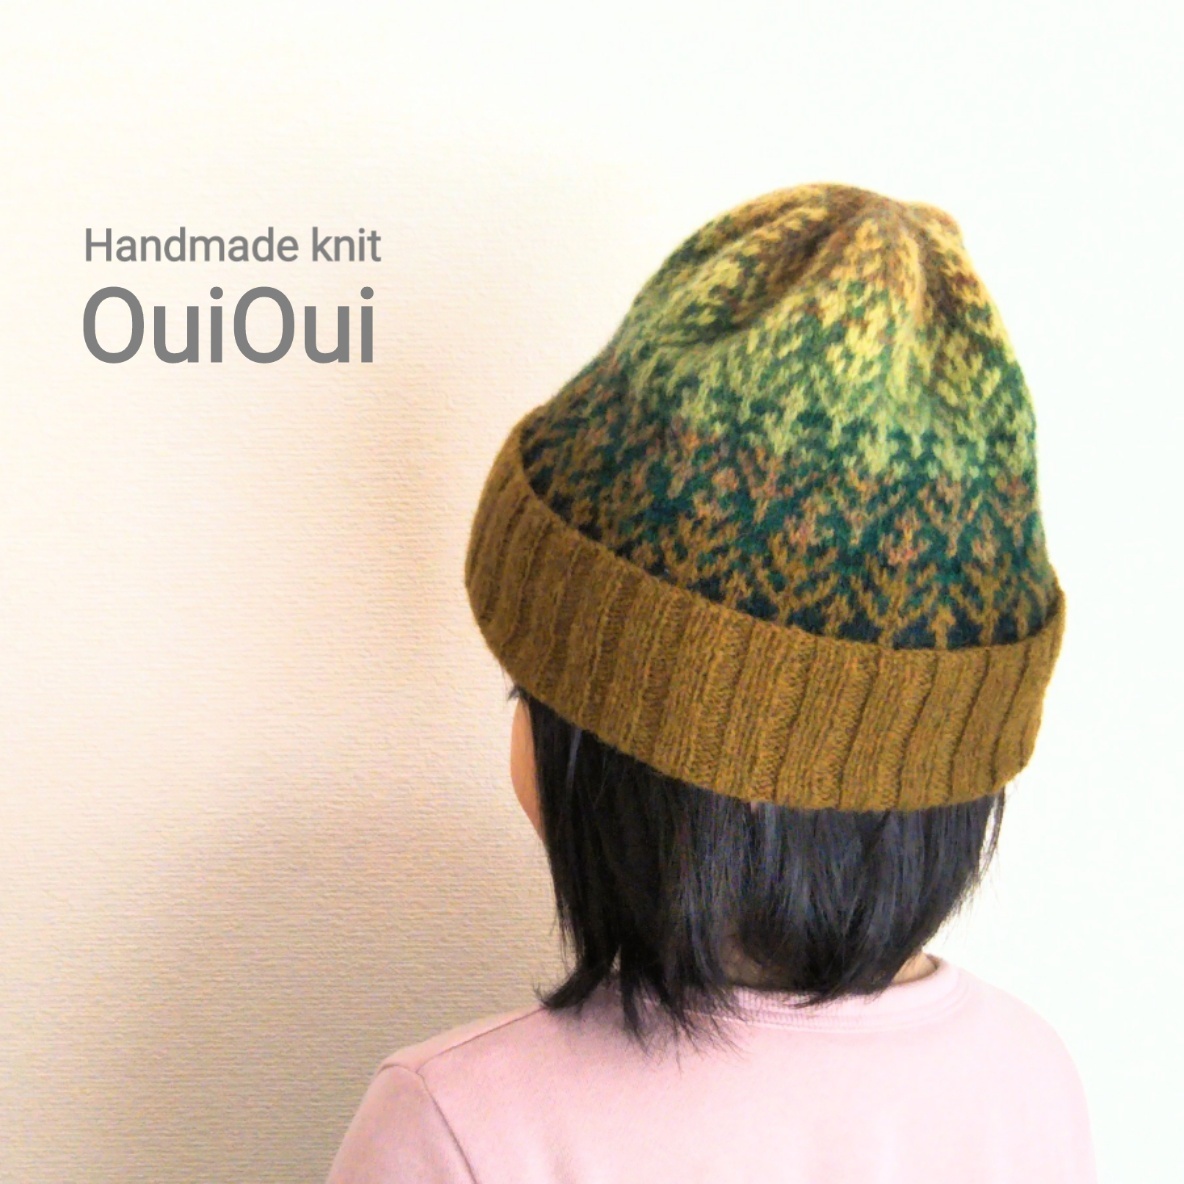 | つつみ展2019作家紹介 |36| Handmade knit OuiOui_e0272050_14544355.jpg